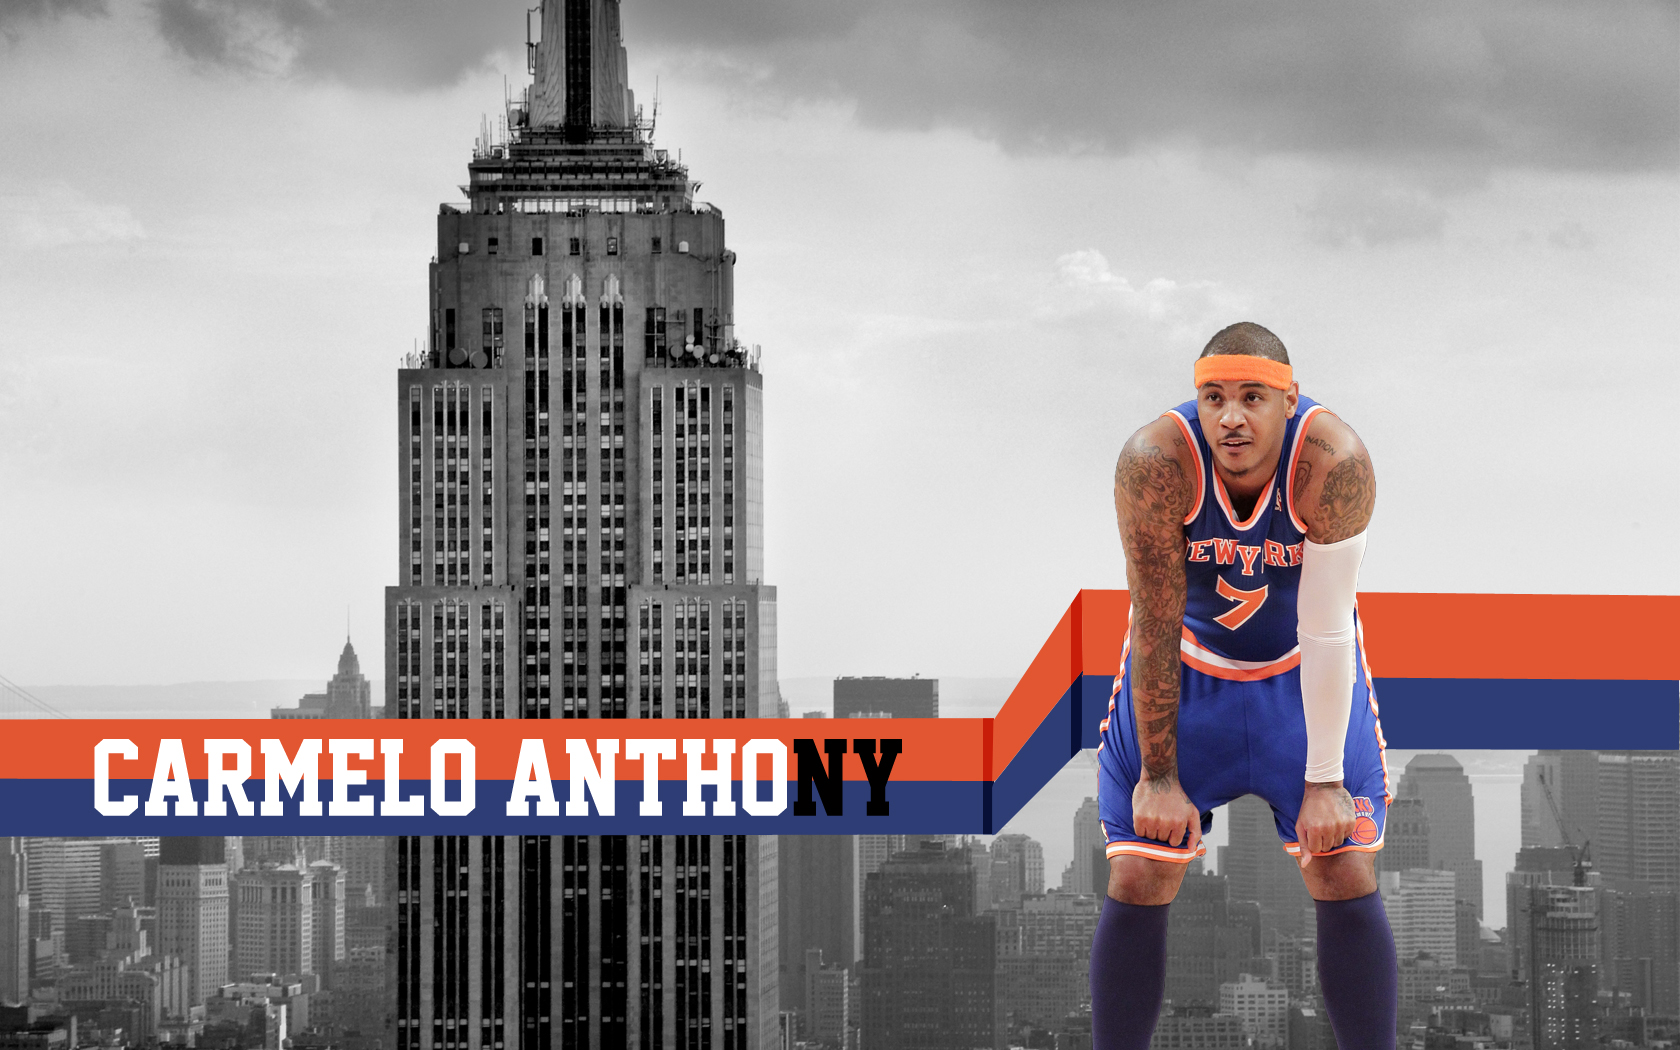 Die besten New York Knicks-Hintergründe für den Telefonbildschirm